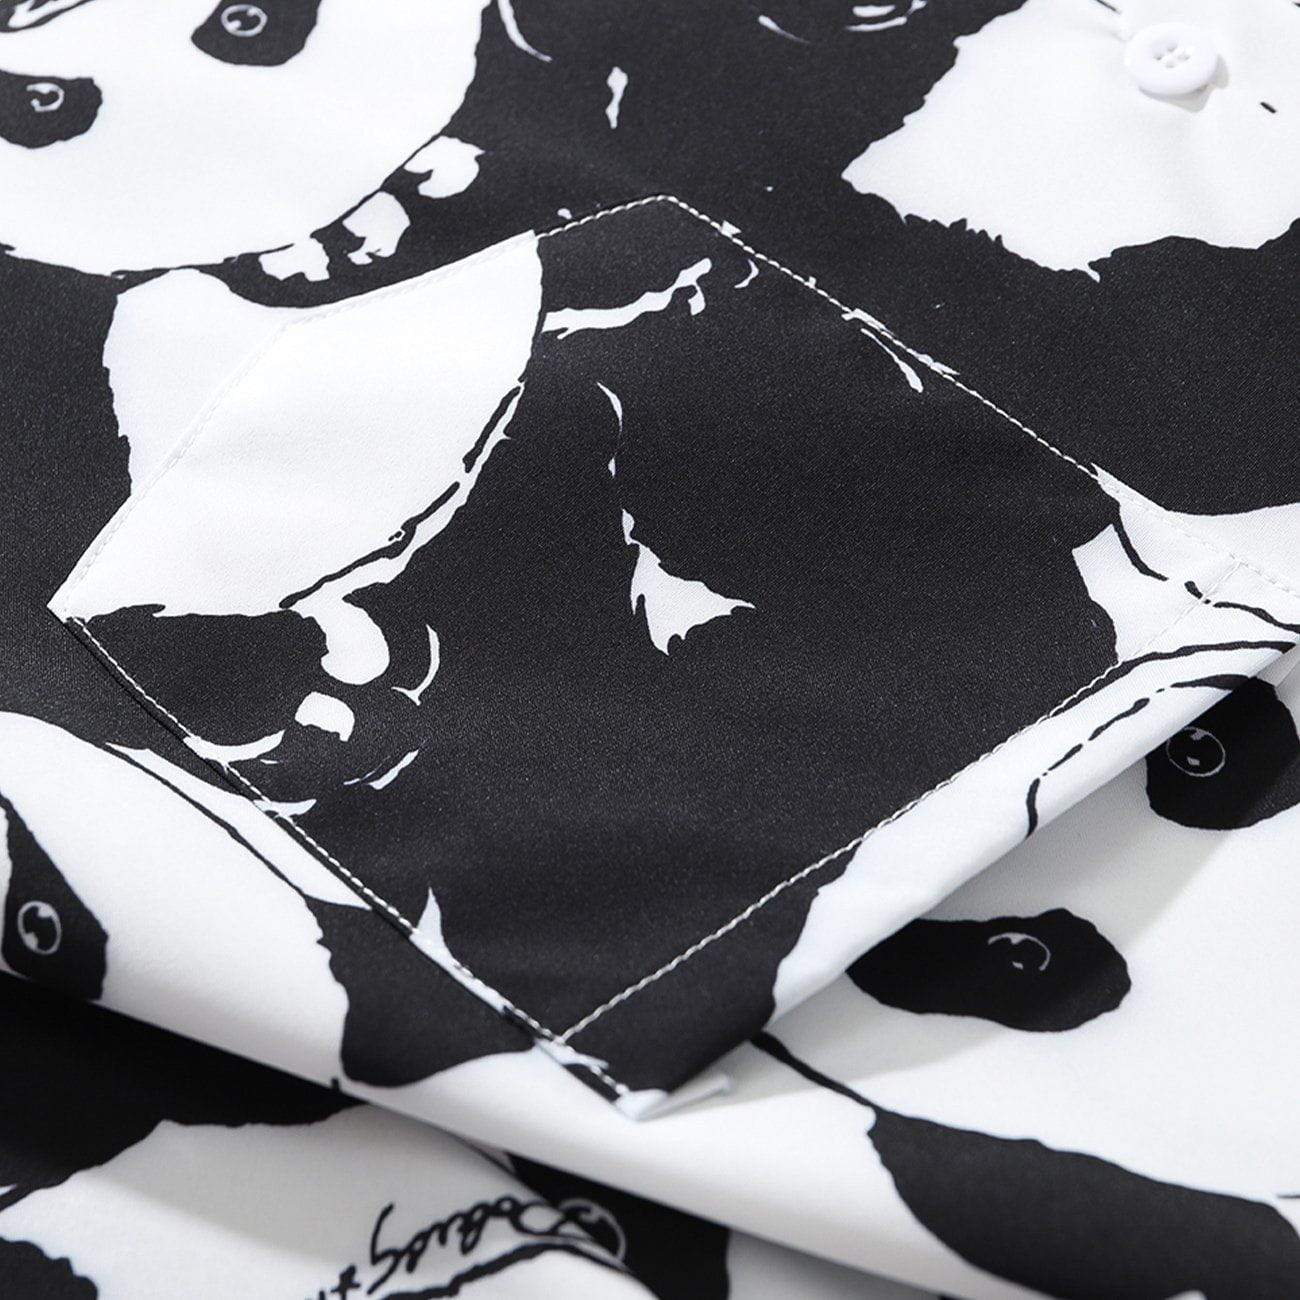 JUSTNOTAG Camicie a maniche corte con stampa Panda